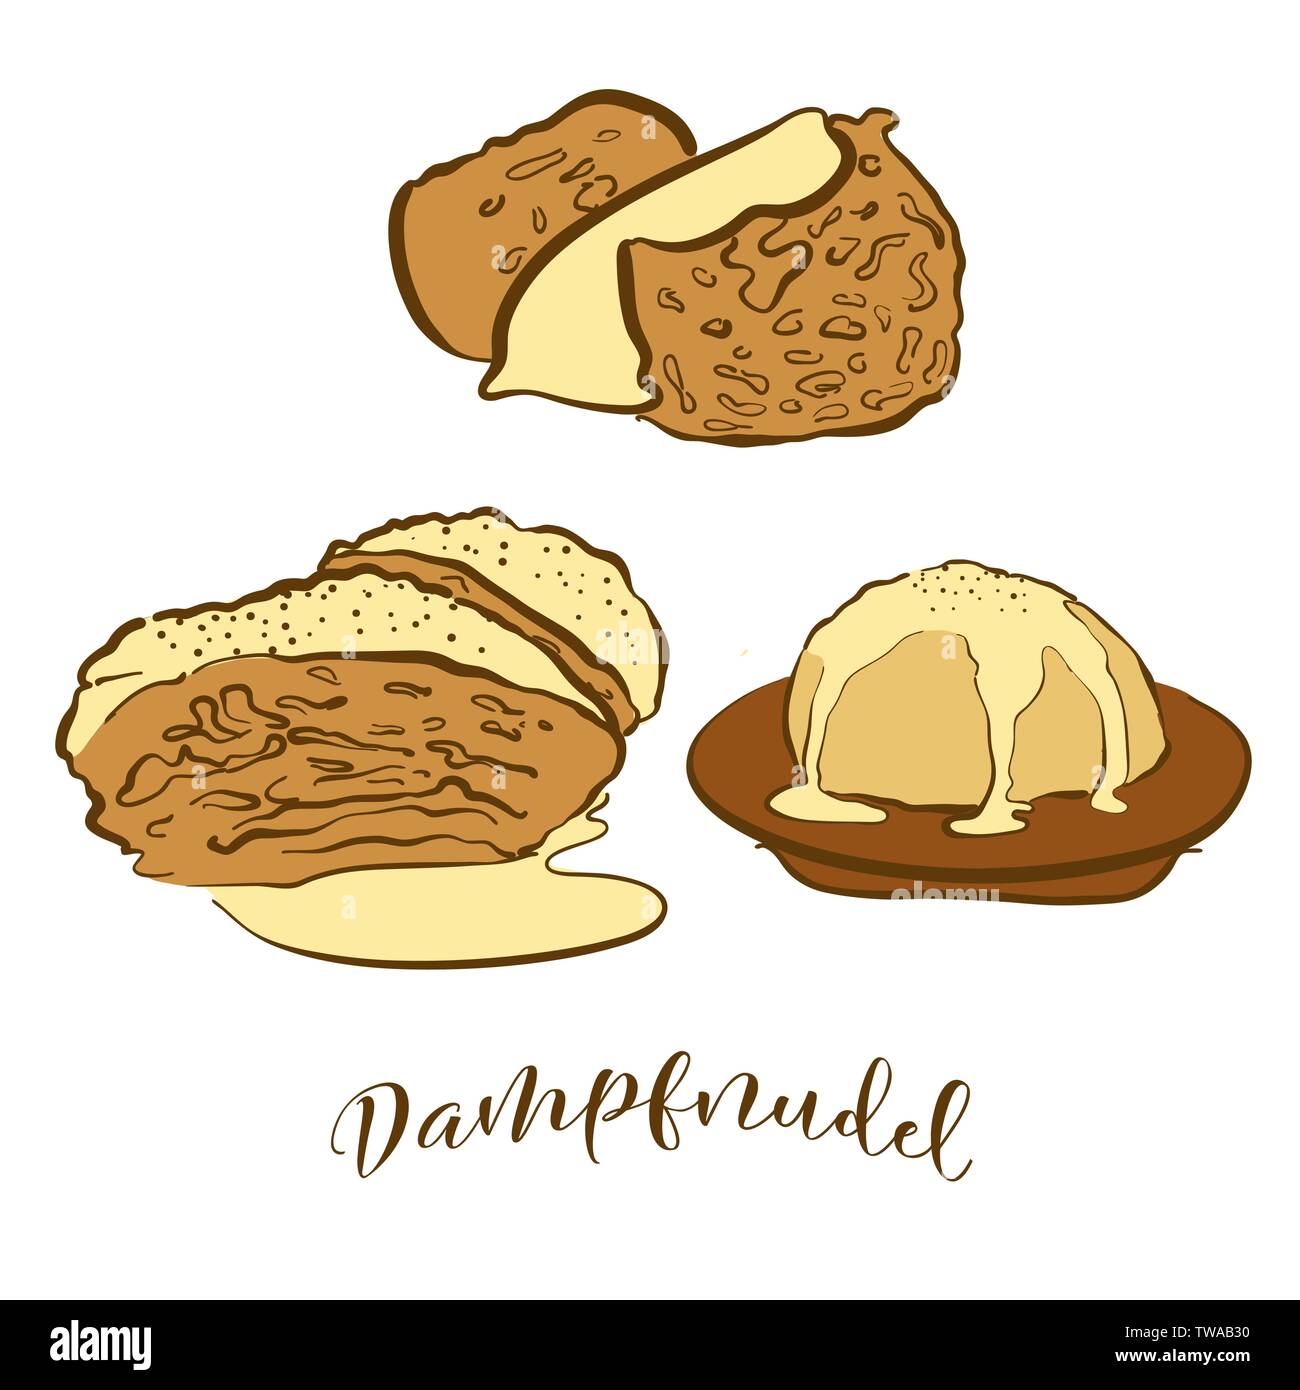 Farbige Skizzen von dampfnudel Brot. Vektor Zeichnung von Süßes Brot essen, in der Regel in Deutschland bekannt. Farbige Brot Abbildung Serie. Stock Vektor